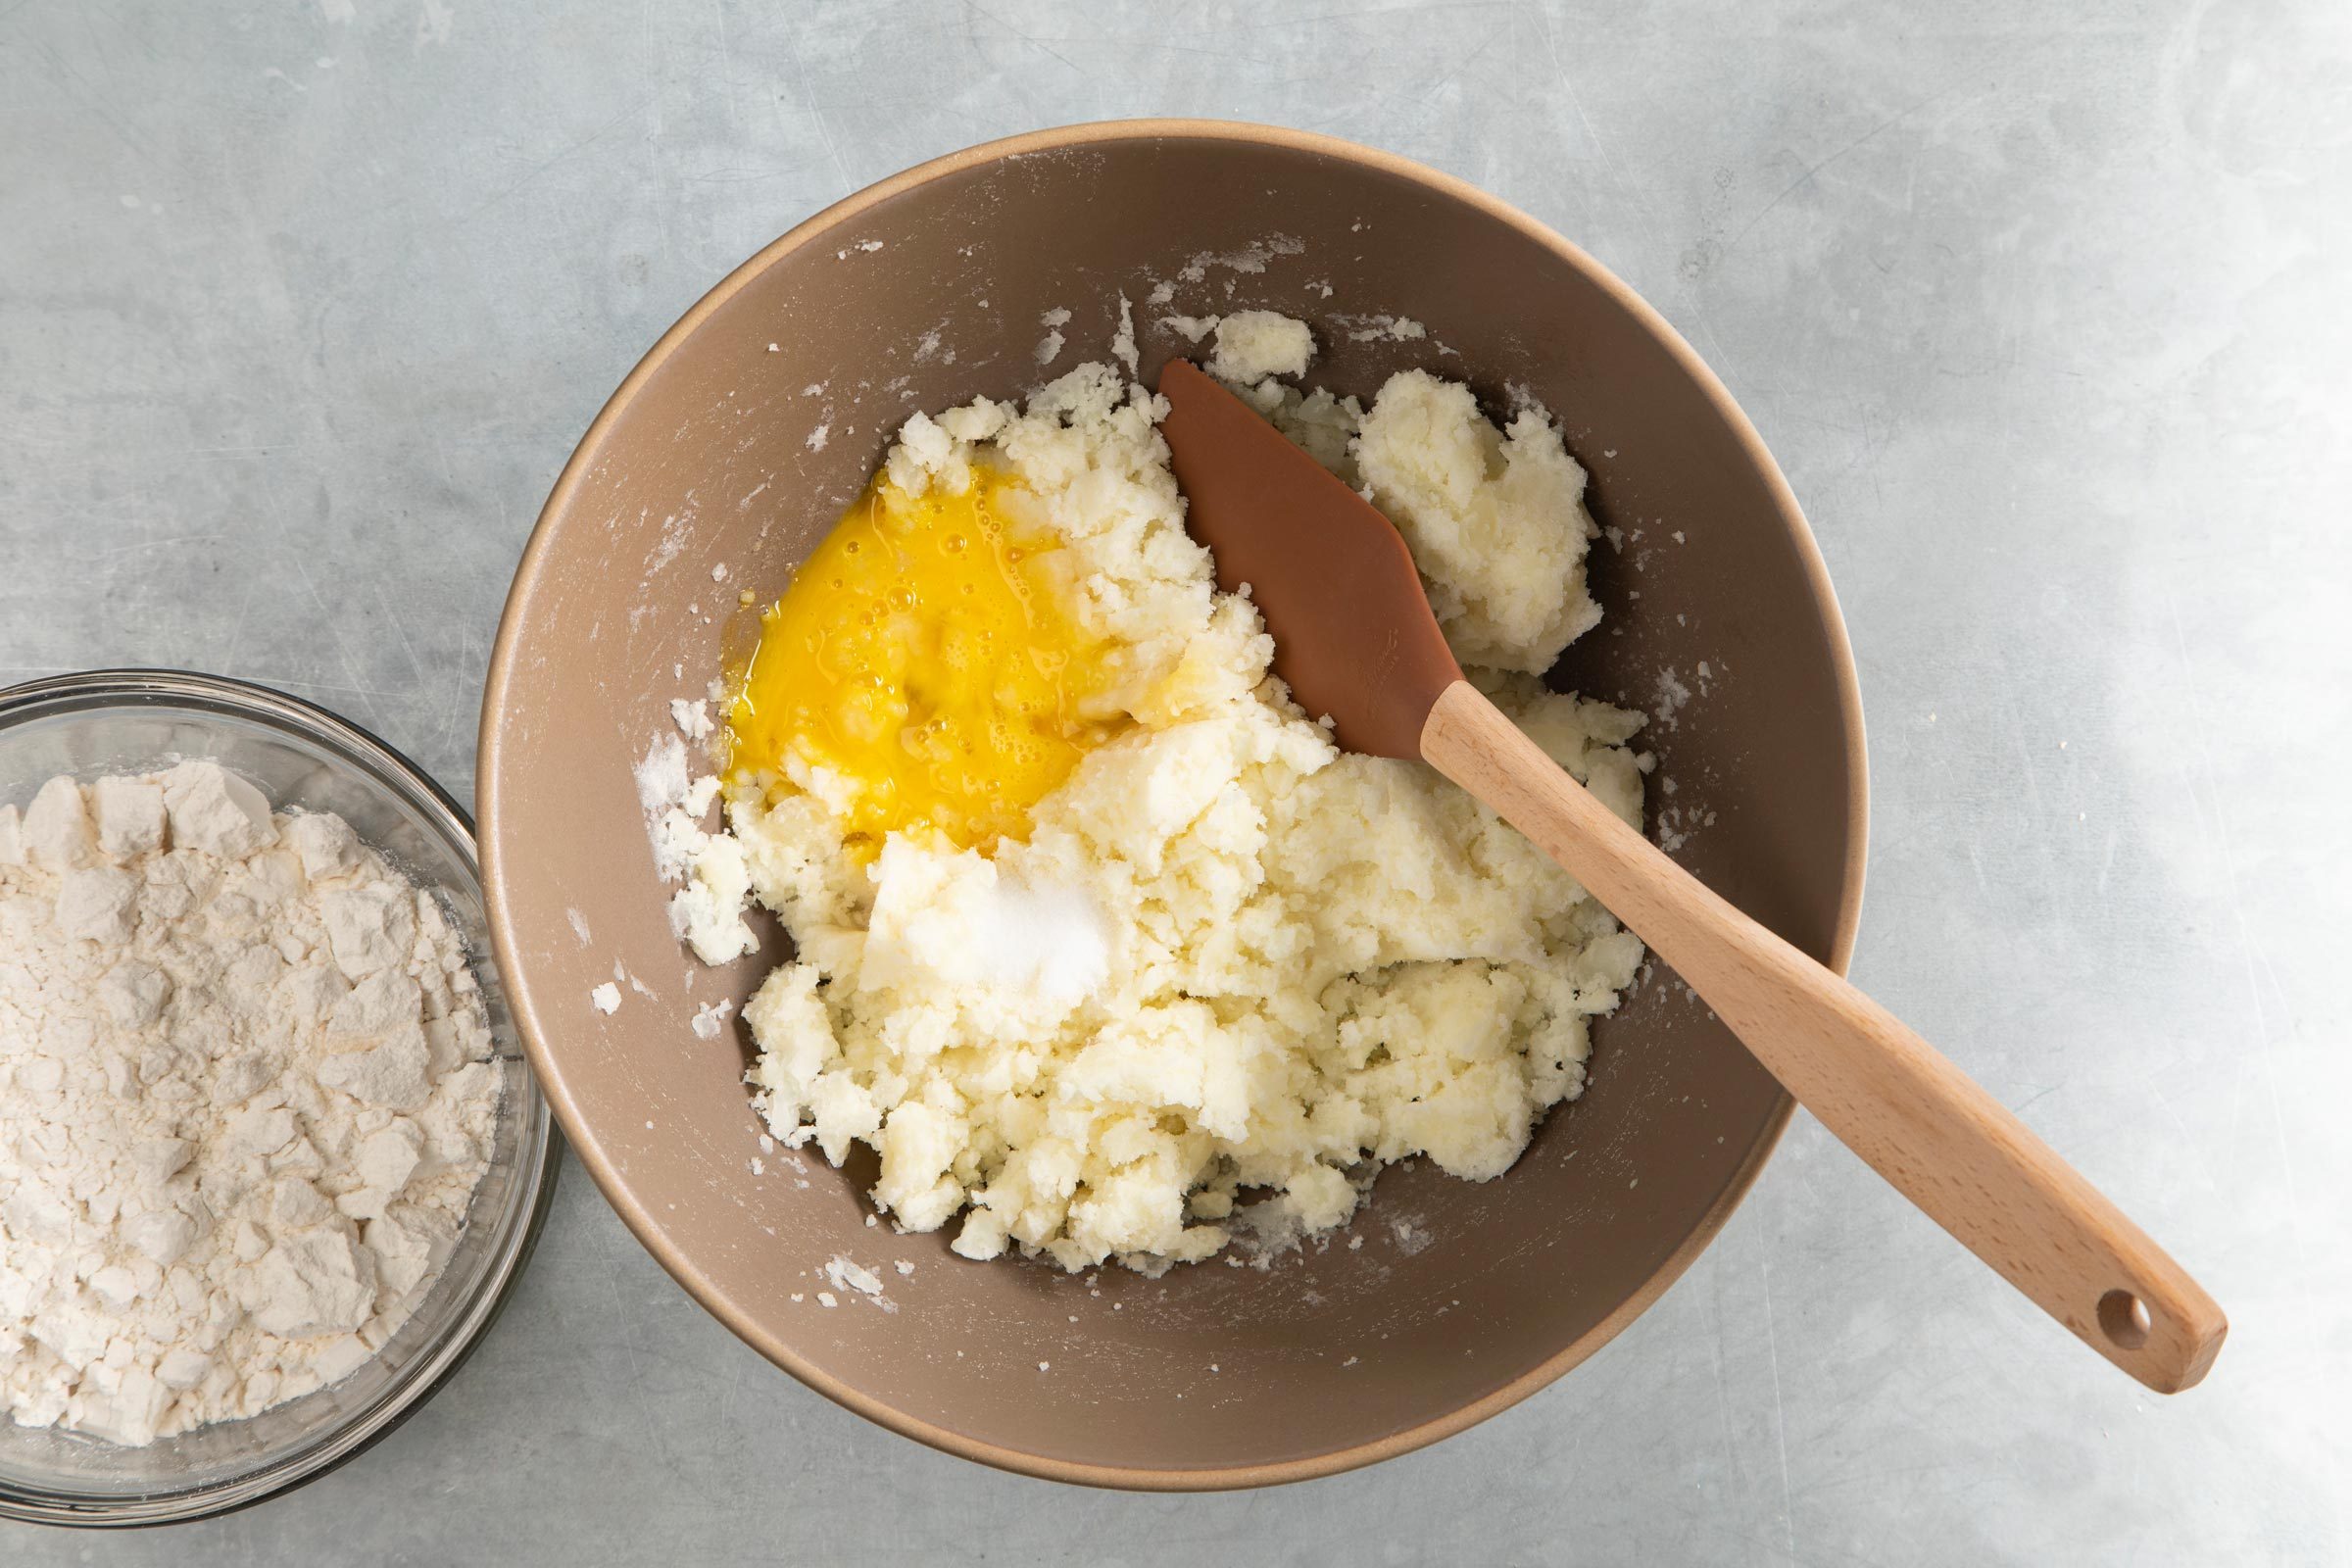 把土豆泥放在大碗里，加一个生鸡蛋和盐，准备混合。旁边放着一碗面粉。